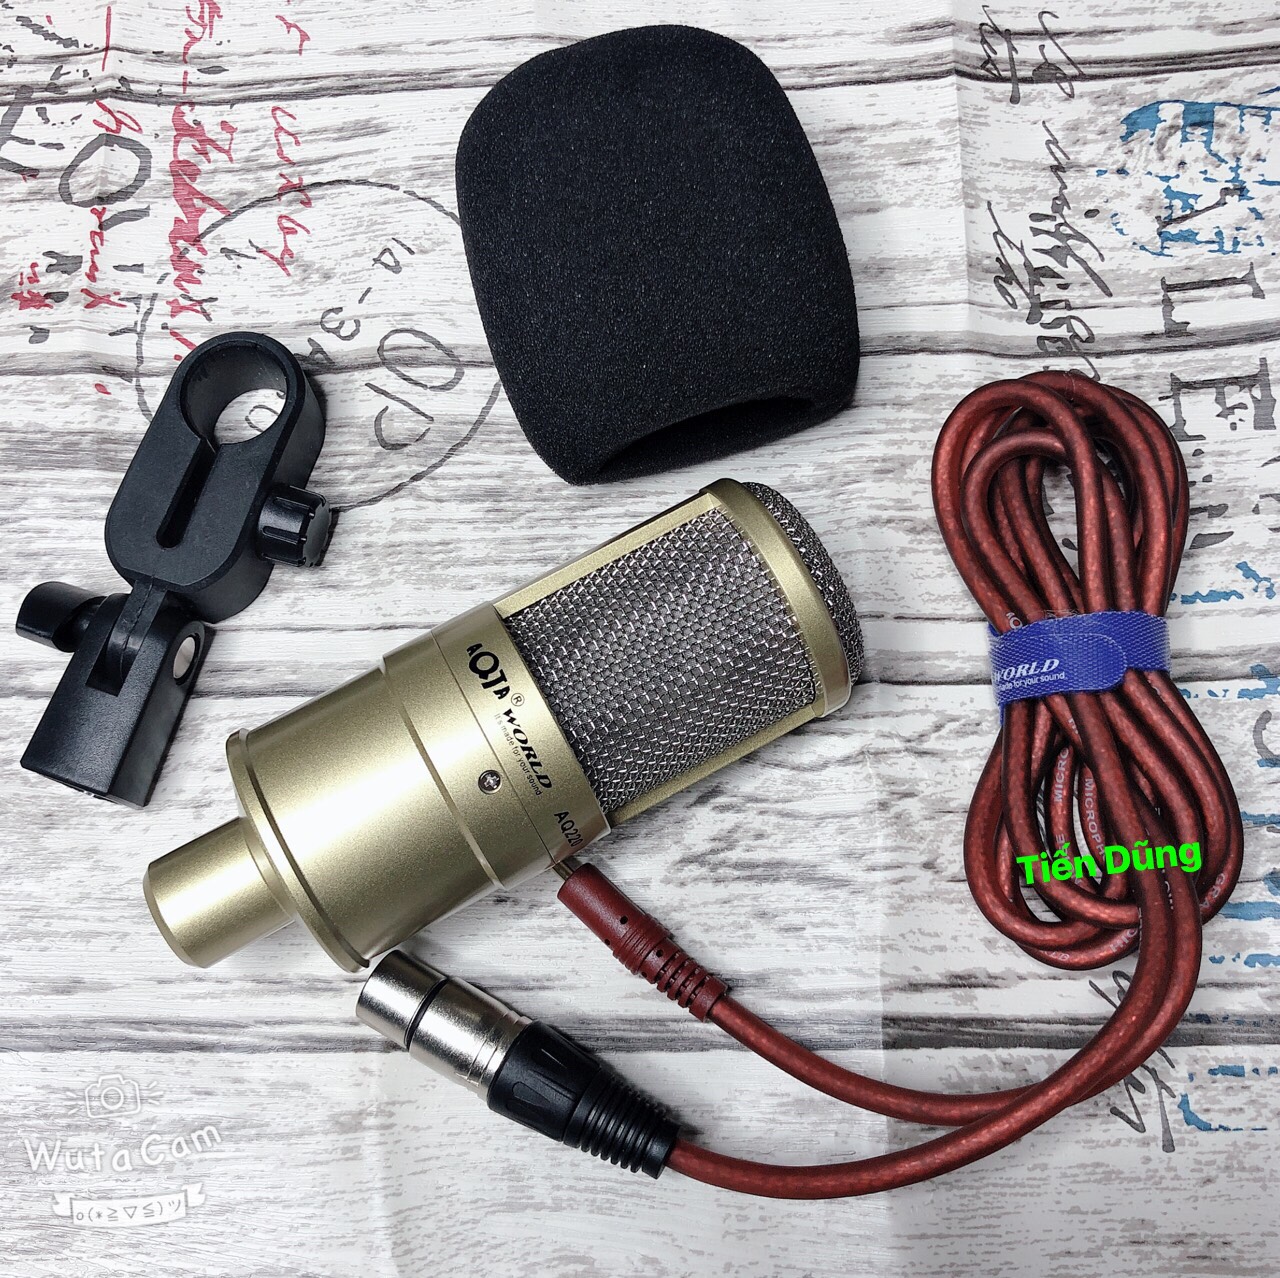 Bộ mic thu âm AQ220 sound card k10 chân kẹp dây livestream MA2- Bô live stream micro aq220 đầy đủ